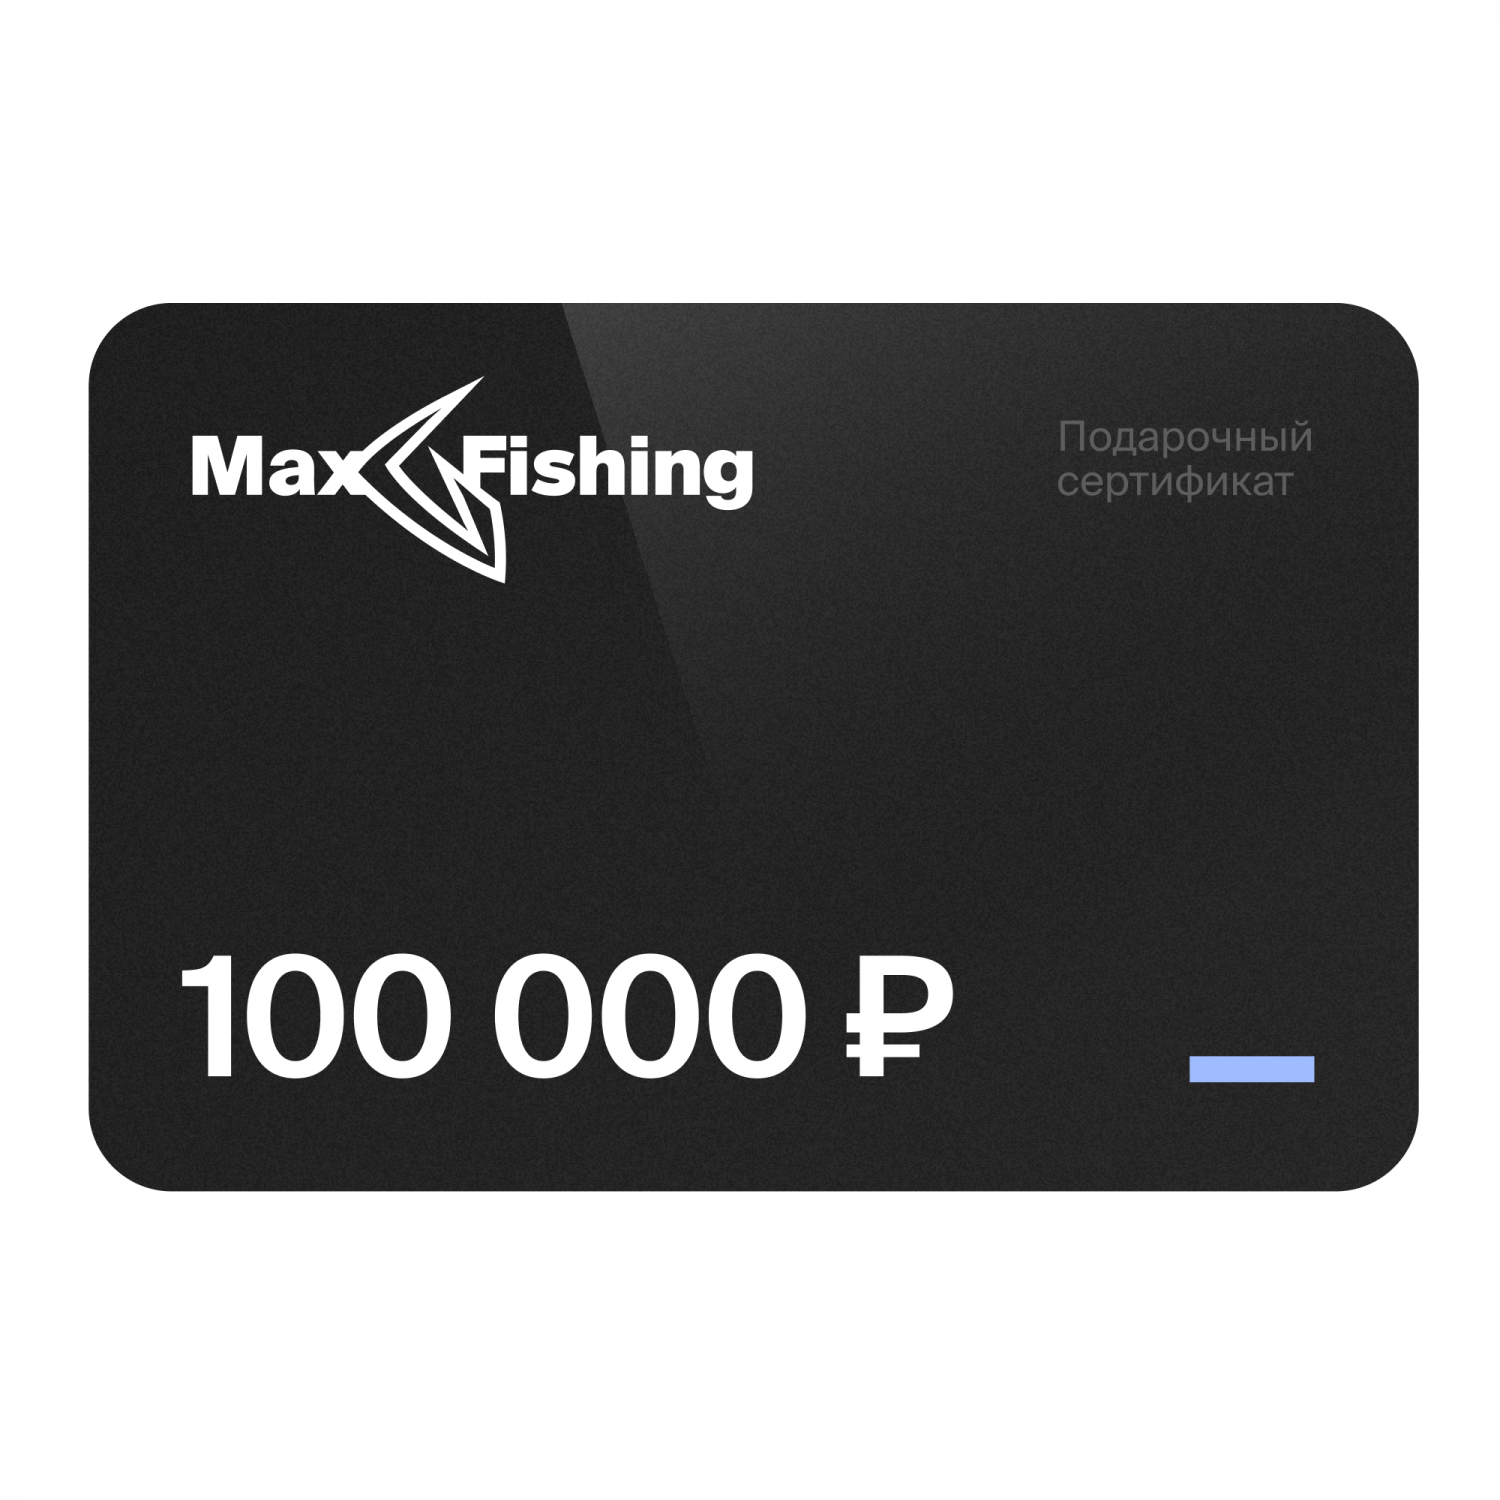 Подарочный сертификат MaxFishing 100 000 ₽ виртуальный подарочный сертификат 3 000